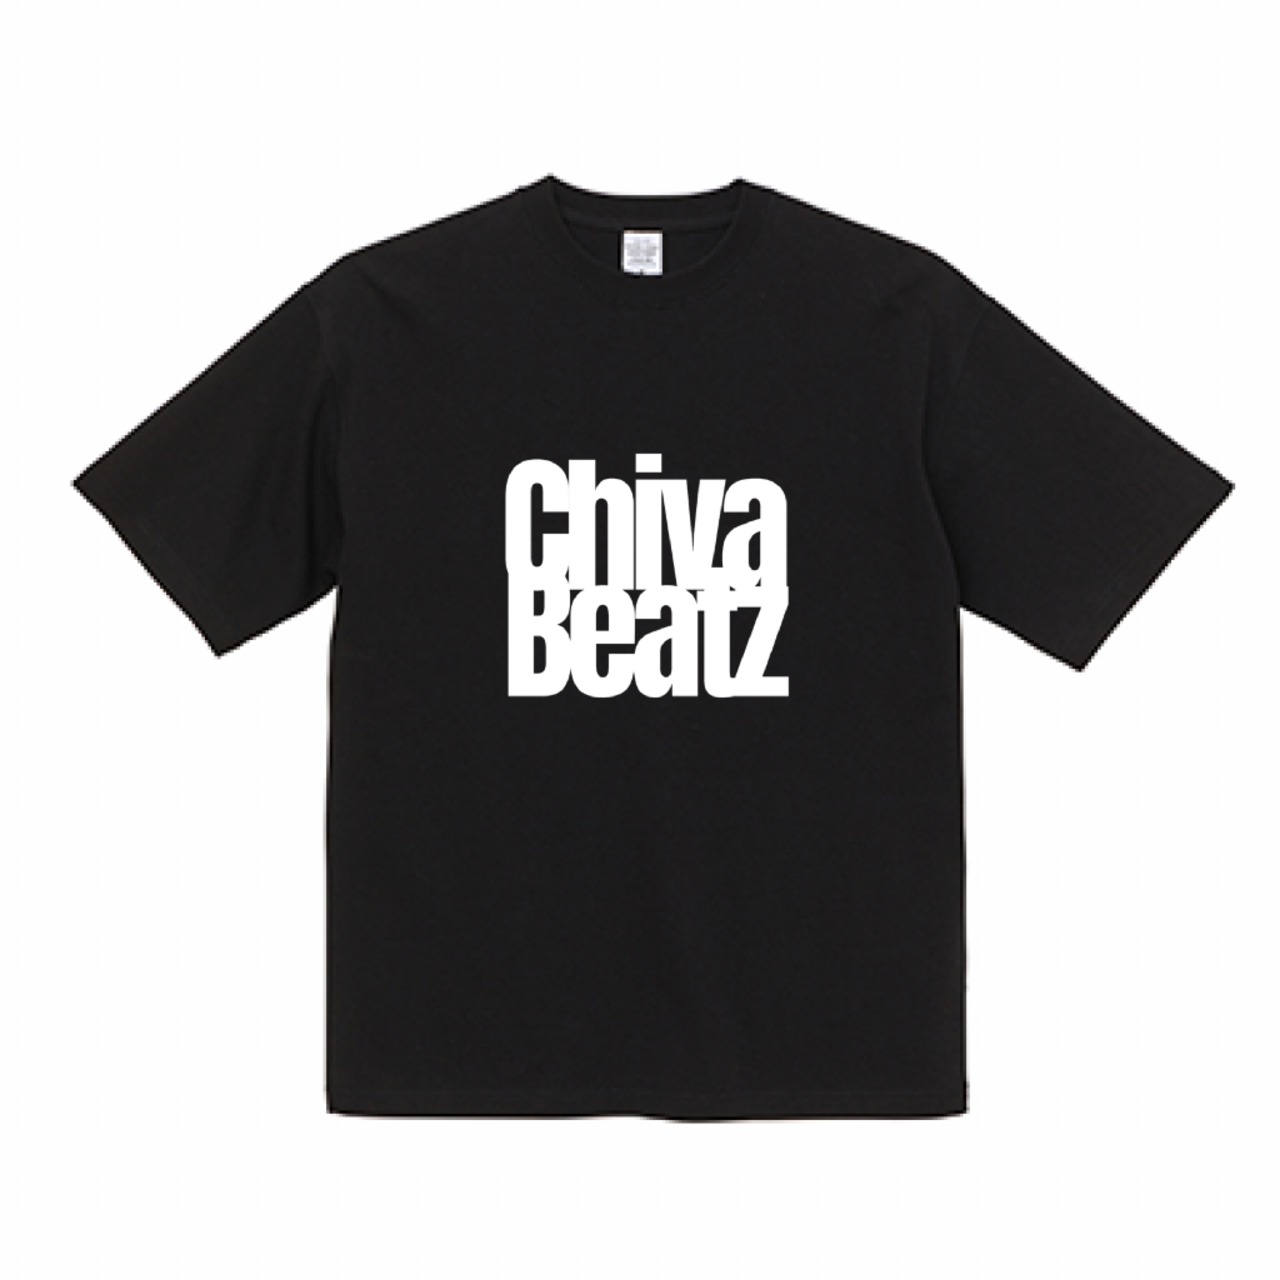 【数量限定生産】ChivaBeatzロゴTシャツ type 4 (Black)